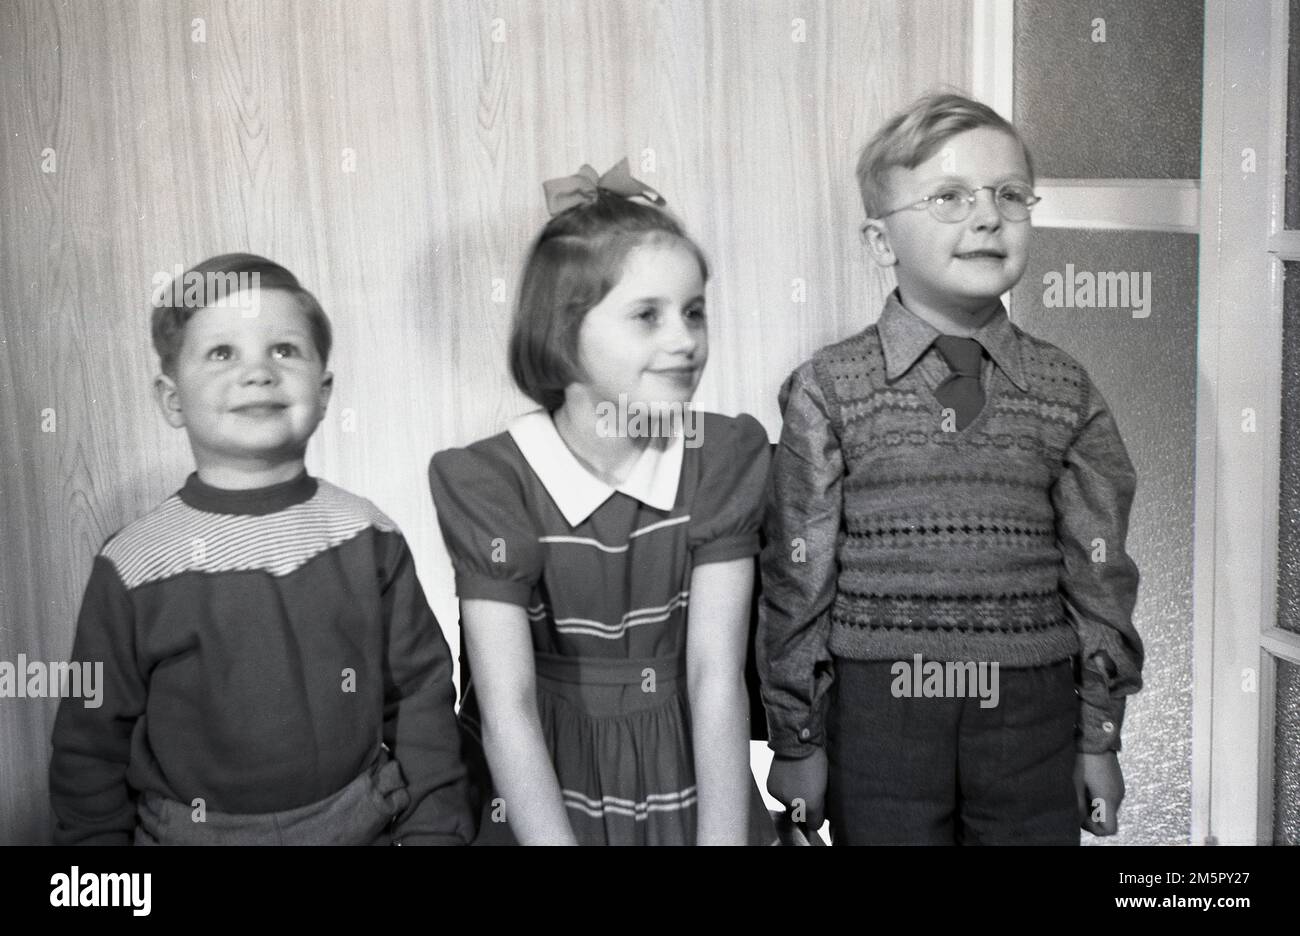 Anni '1950, storici, al chiuso, tre bambini stanno per scattare foto nei vestiti dell'epoca, il ragazzino che indossa una canotta senza maniche e la bambina con un fiocco di capelli, Inghilterra, Regno Unito. Foto Stock